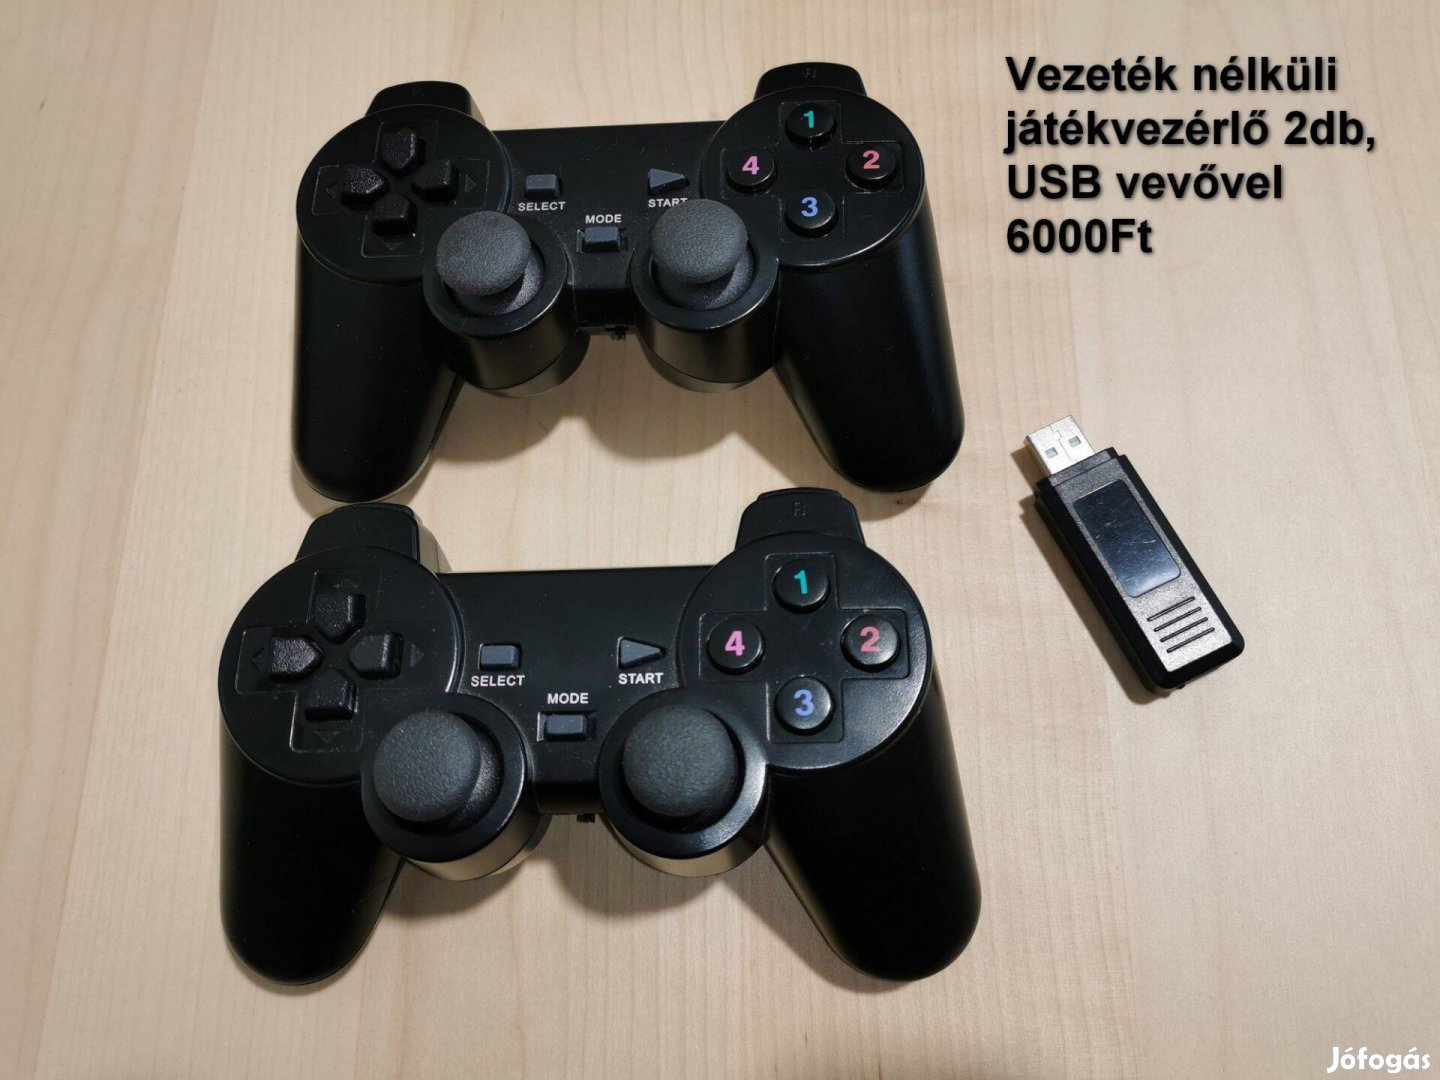 2db USB játékvezérlő, vezeték nélküli